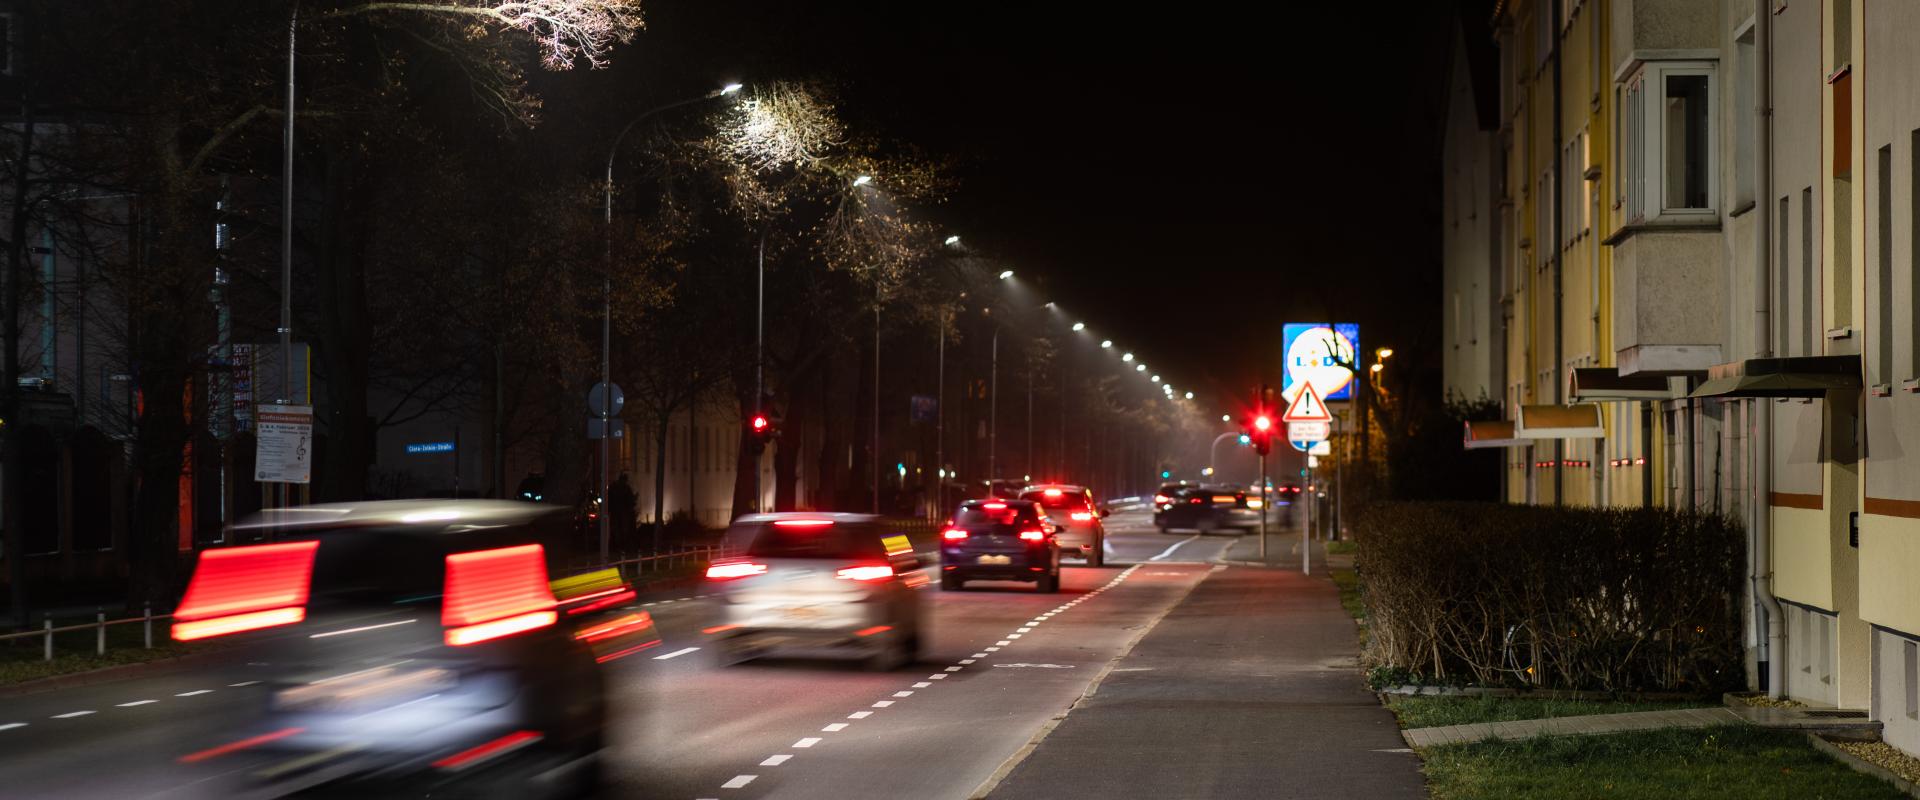 Straßenbeleuchtung 